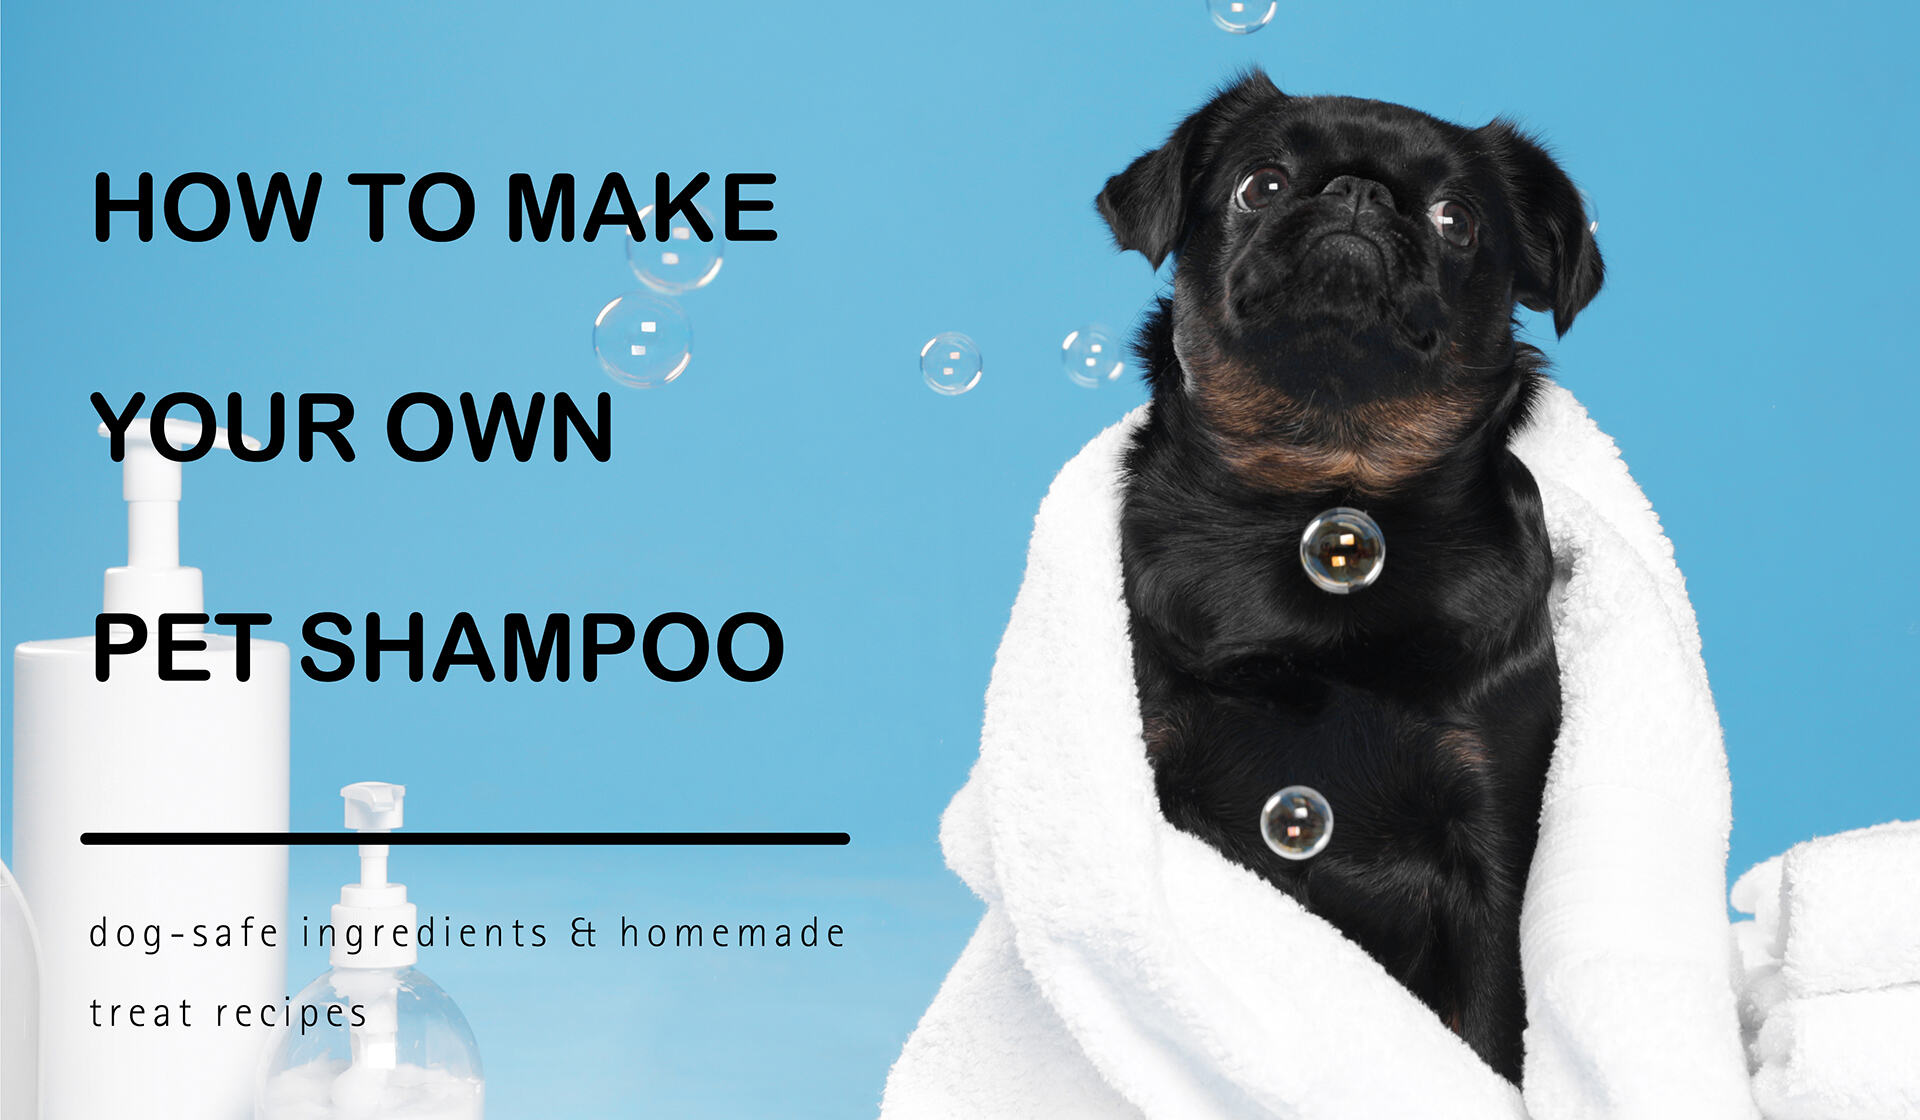 How to Make Homemade Natural Dog Shampoo